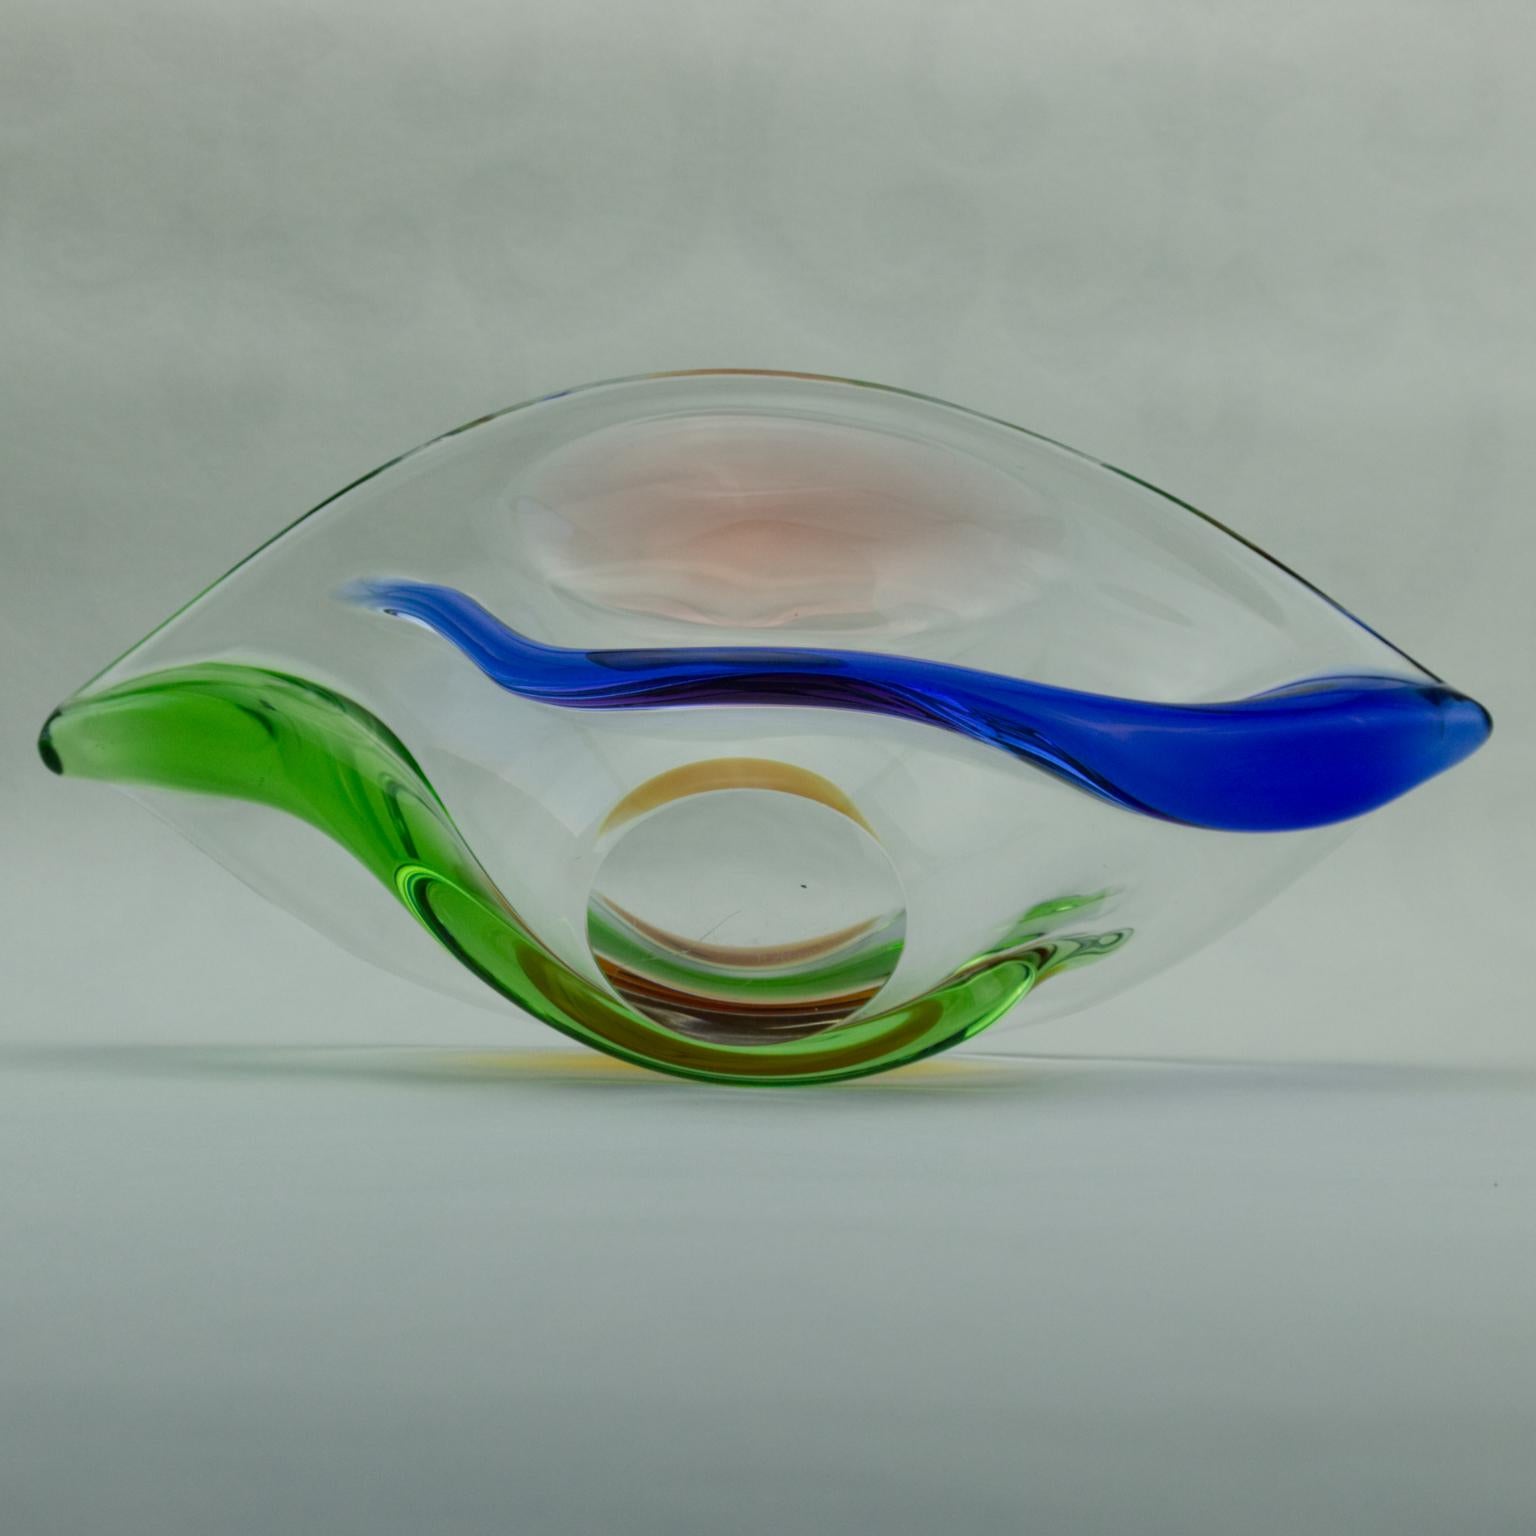 Mid-20th Century Czech Art Glass Bowl by Frantisek Zemek for Mstisov Glassworks, 1960